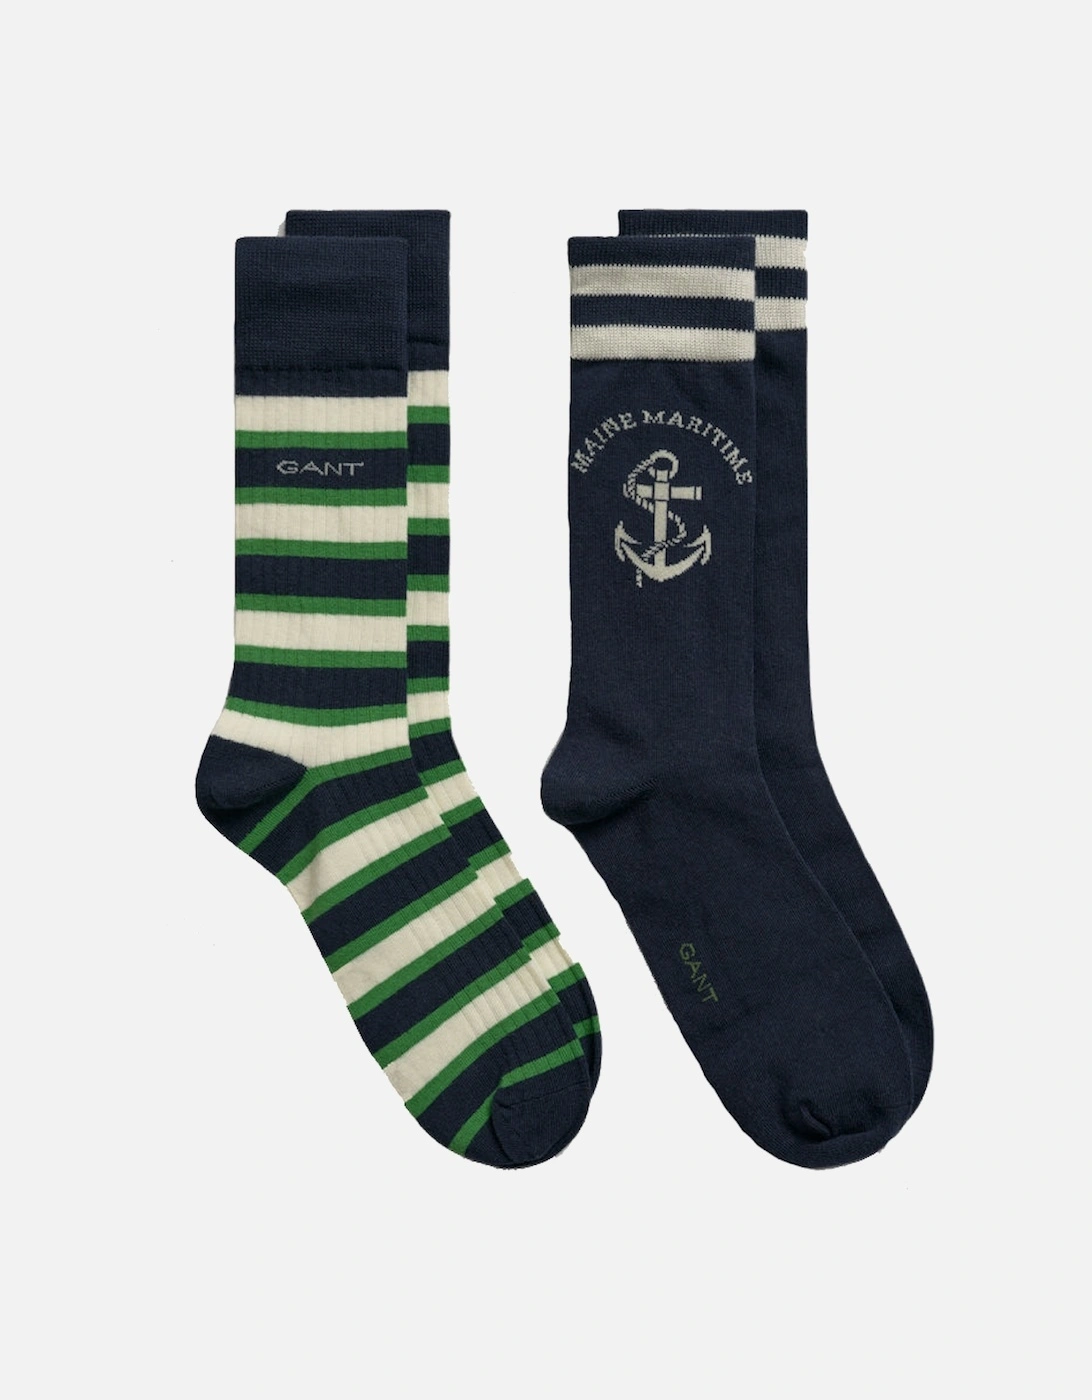 2 Pack Men's Maritime Socks, 2 of 1